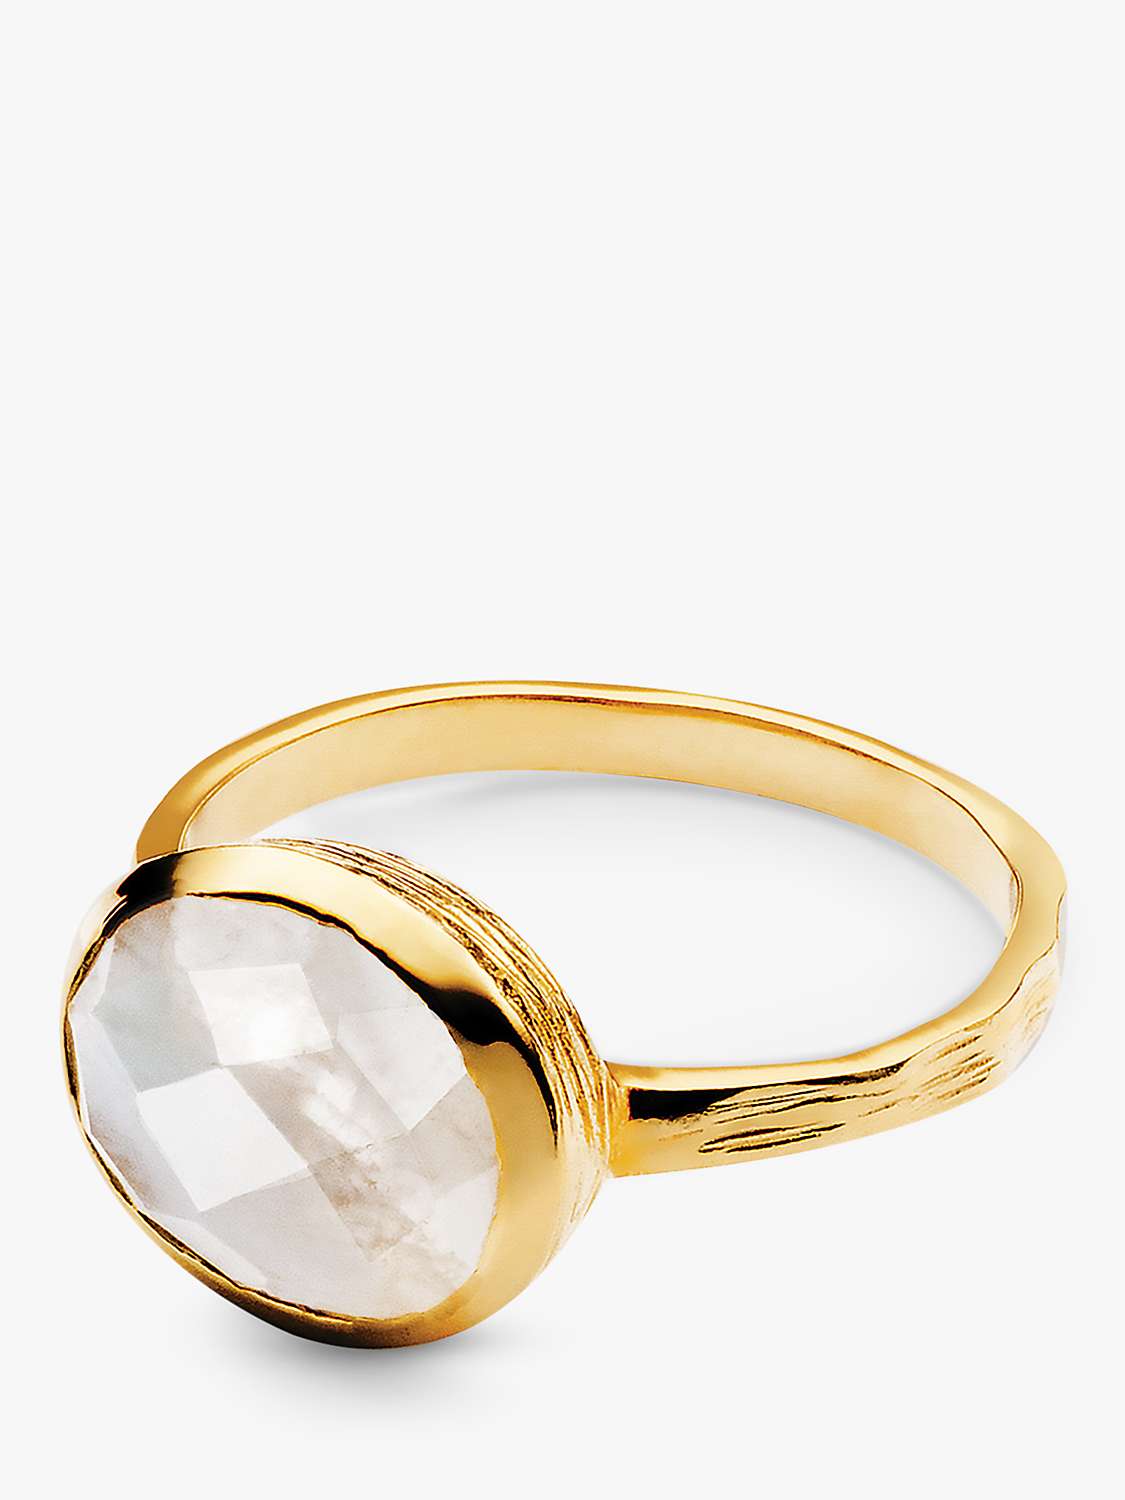 Buy Sarah Alexander Glacier Gemstone Ring, Gold Online at johnlewis.com